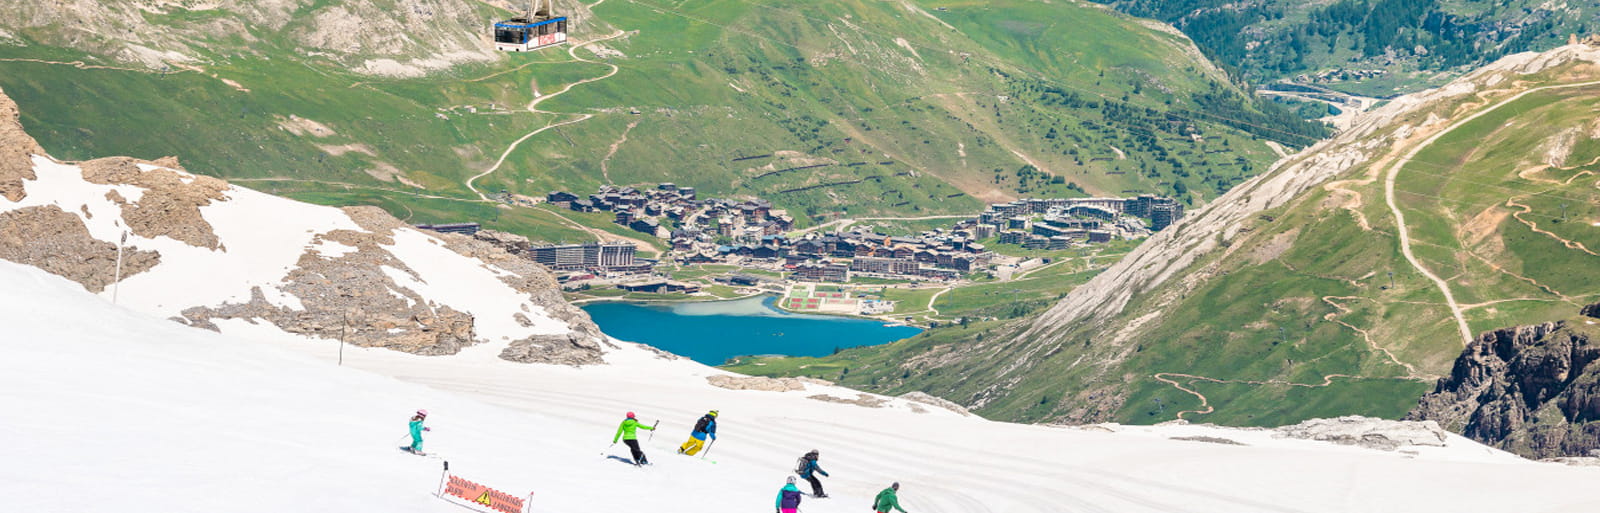 In diesem Sommer ist es möglich, auf einer Höhe von 3000m unter der Sonne von Tignes Ski zu fahren.